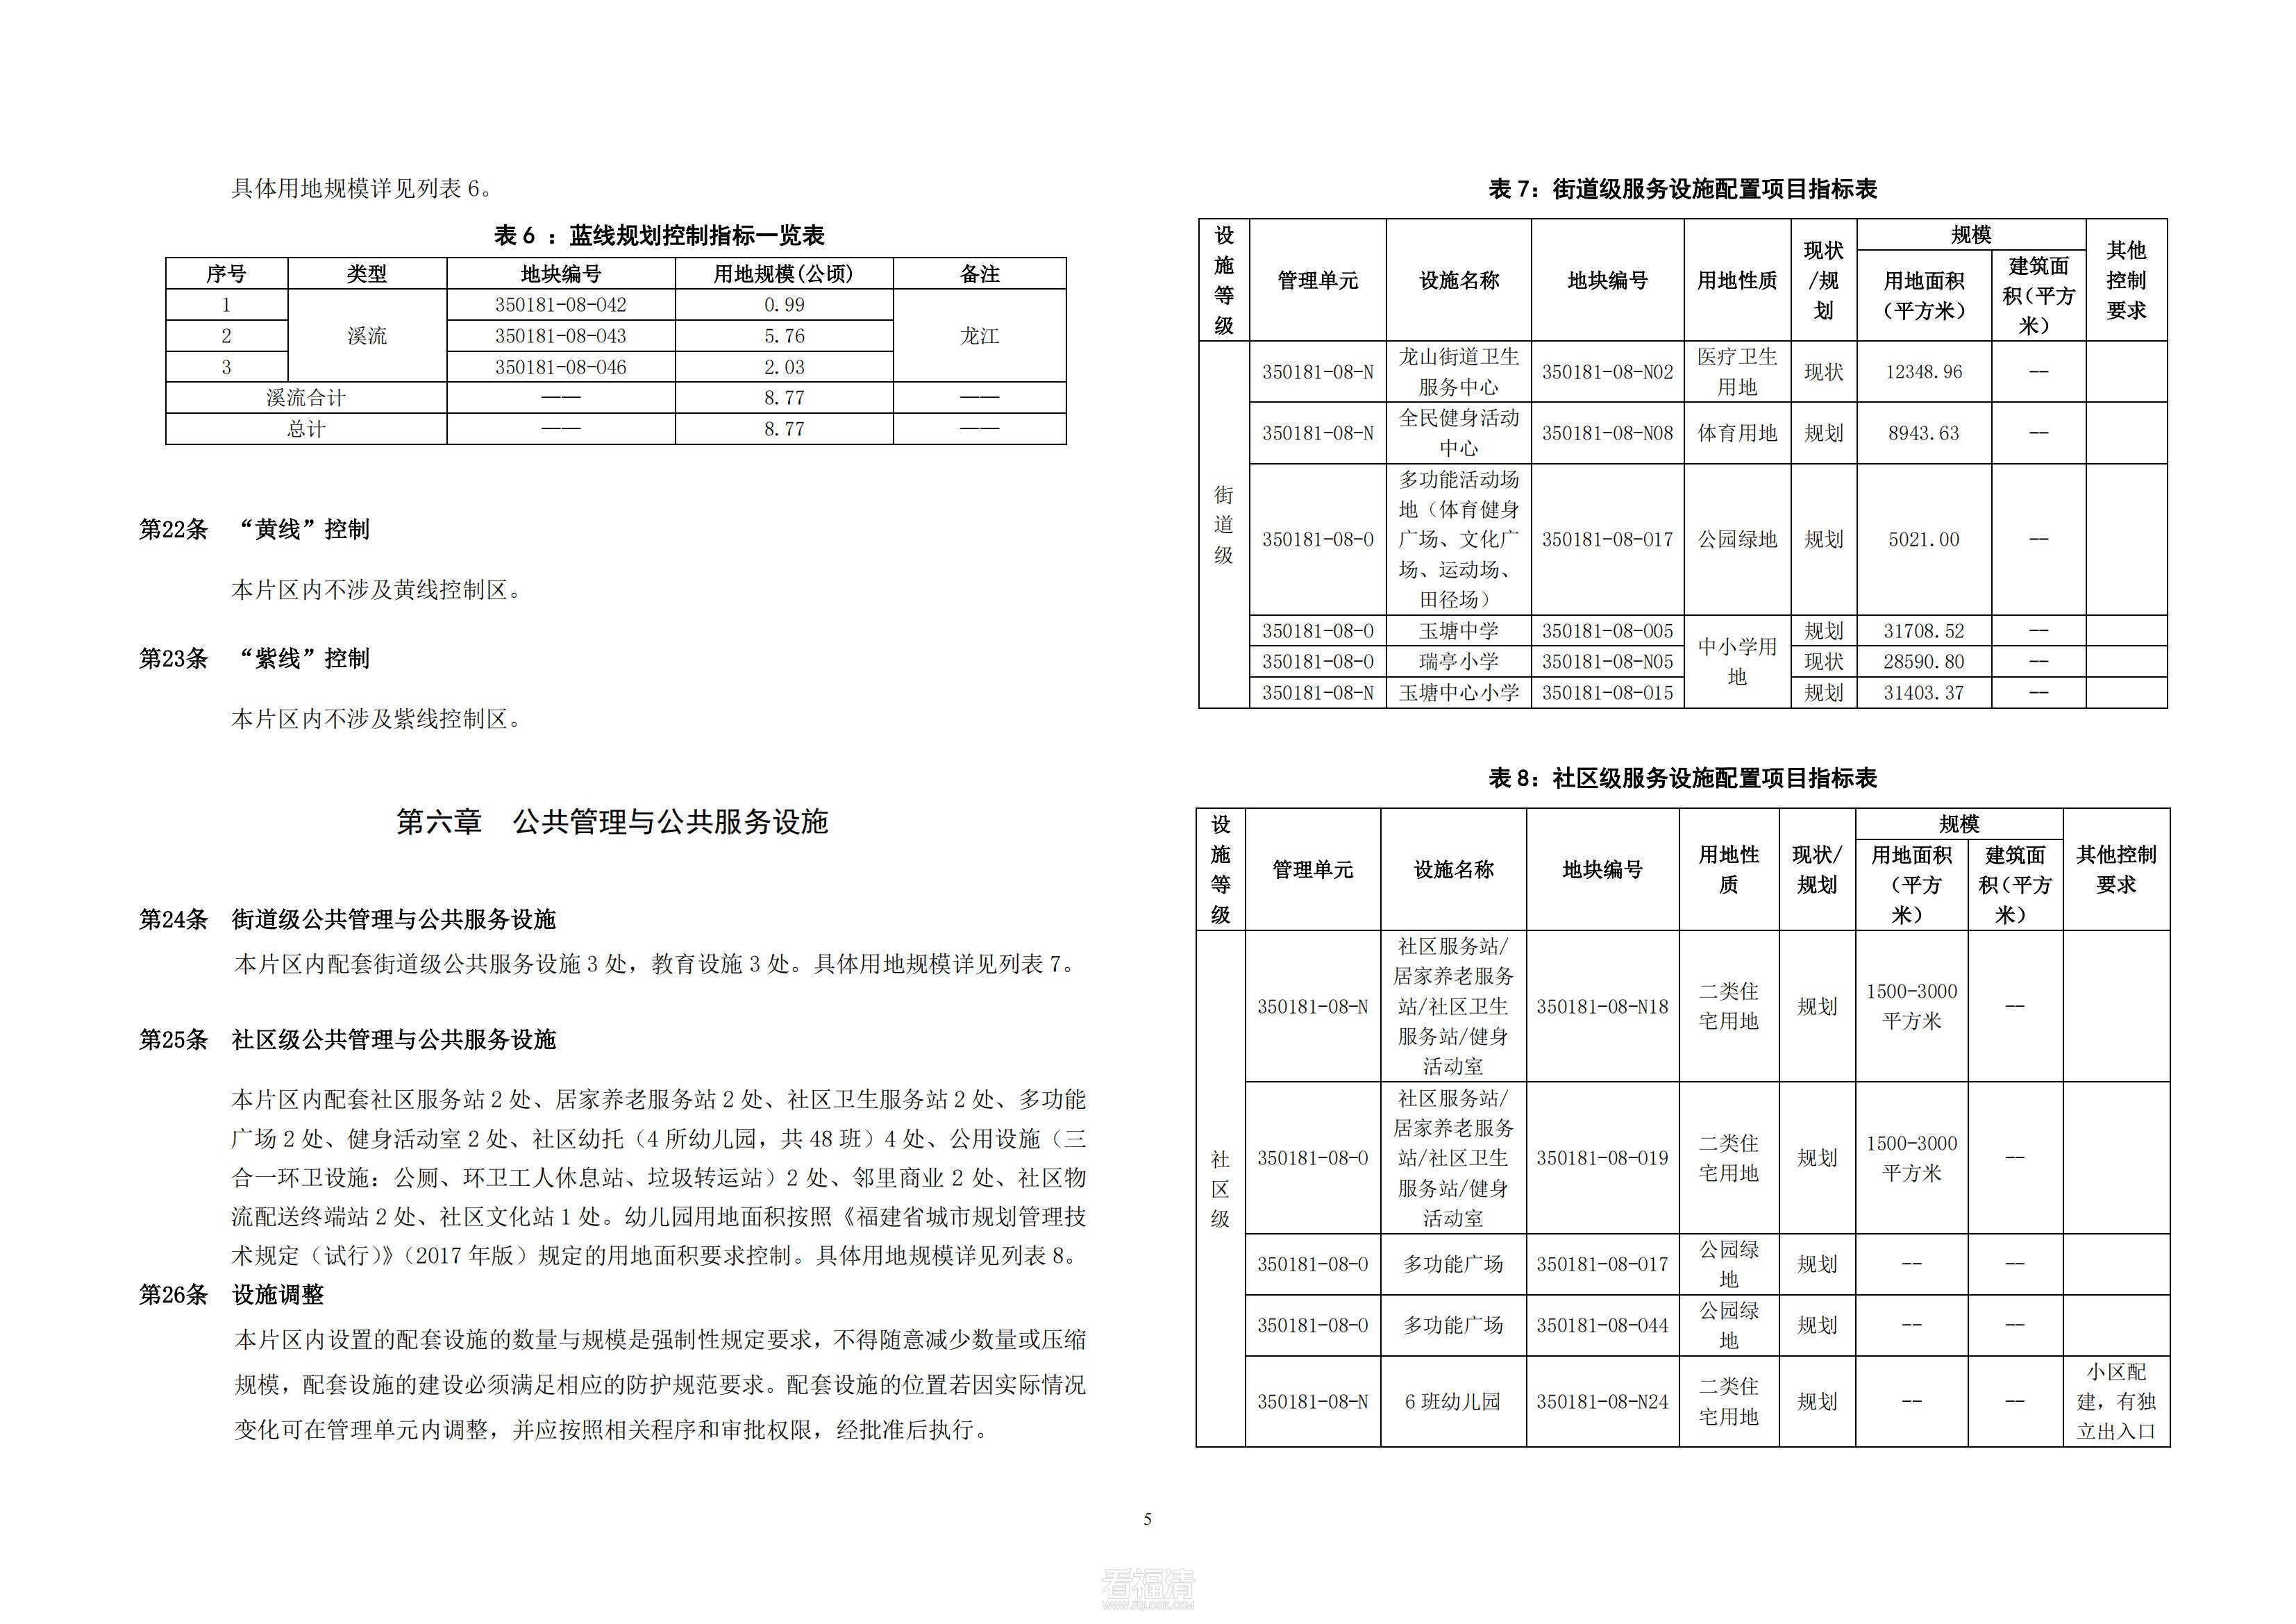 福清市中心城区基本单元350181-08-N、350181-08-O控制性详细规划修编_09.jpg